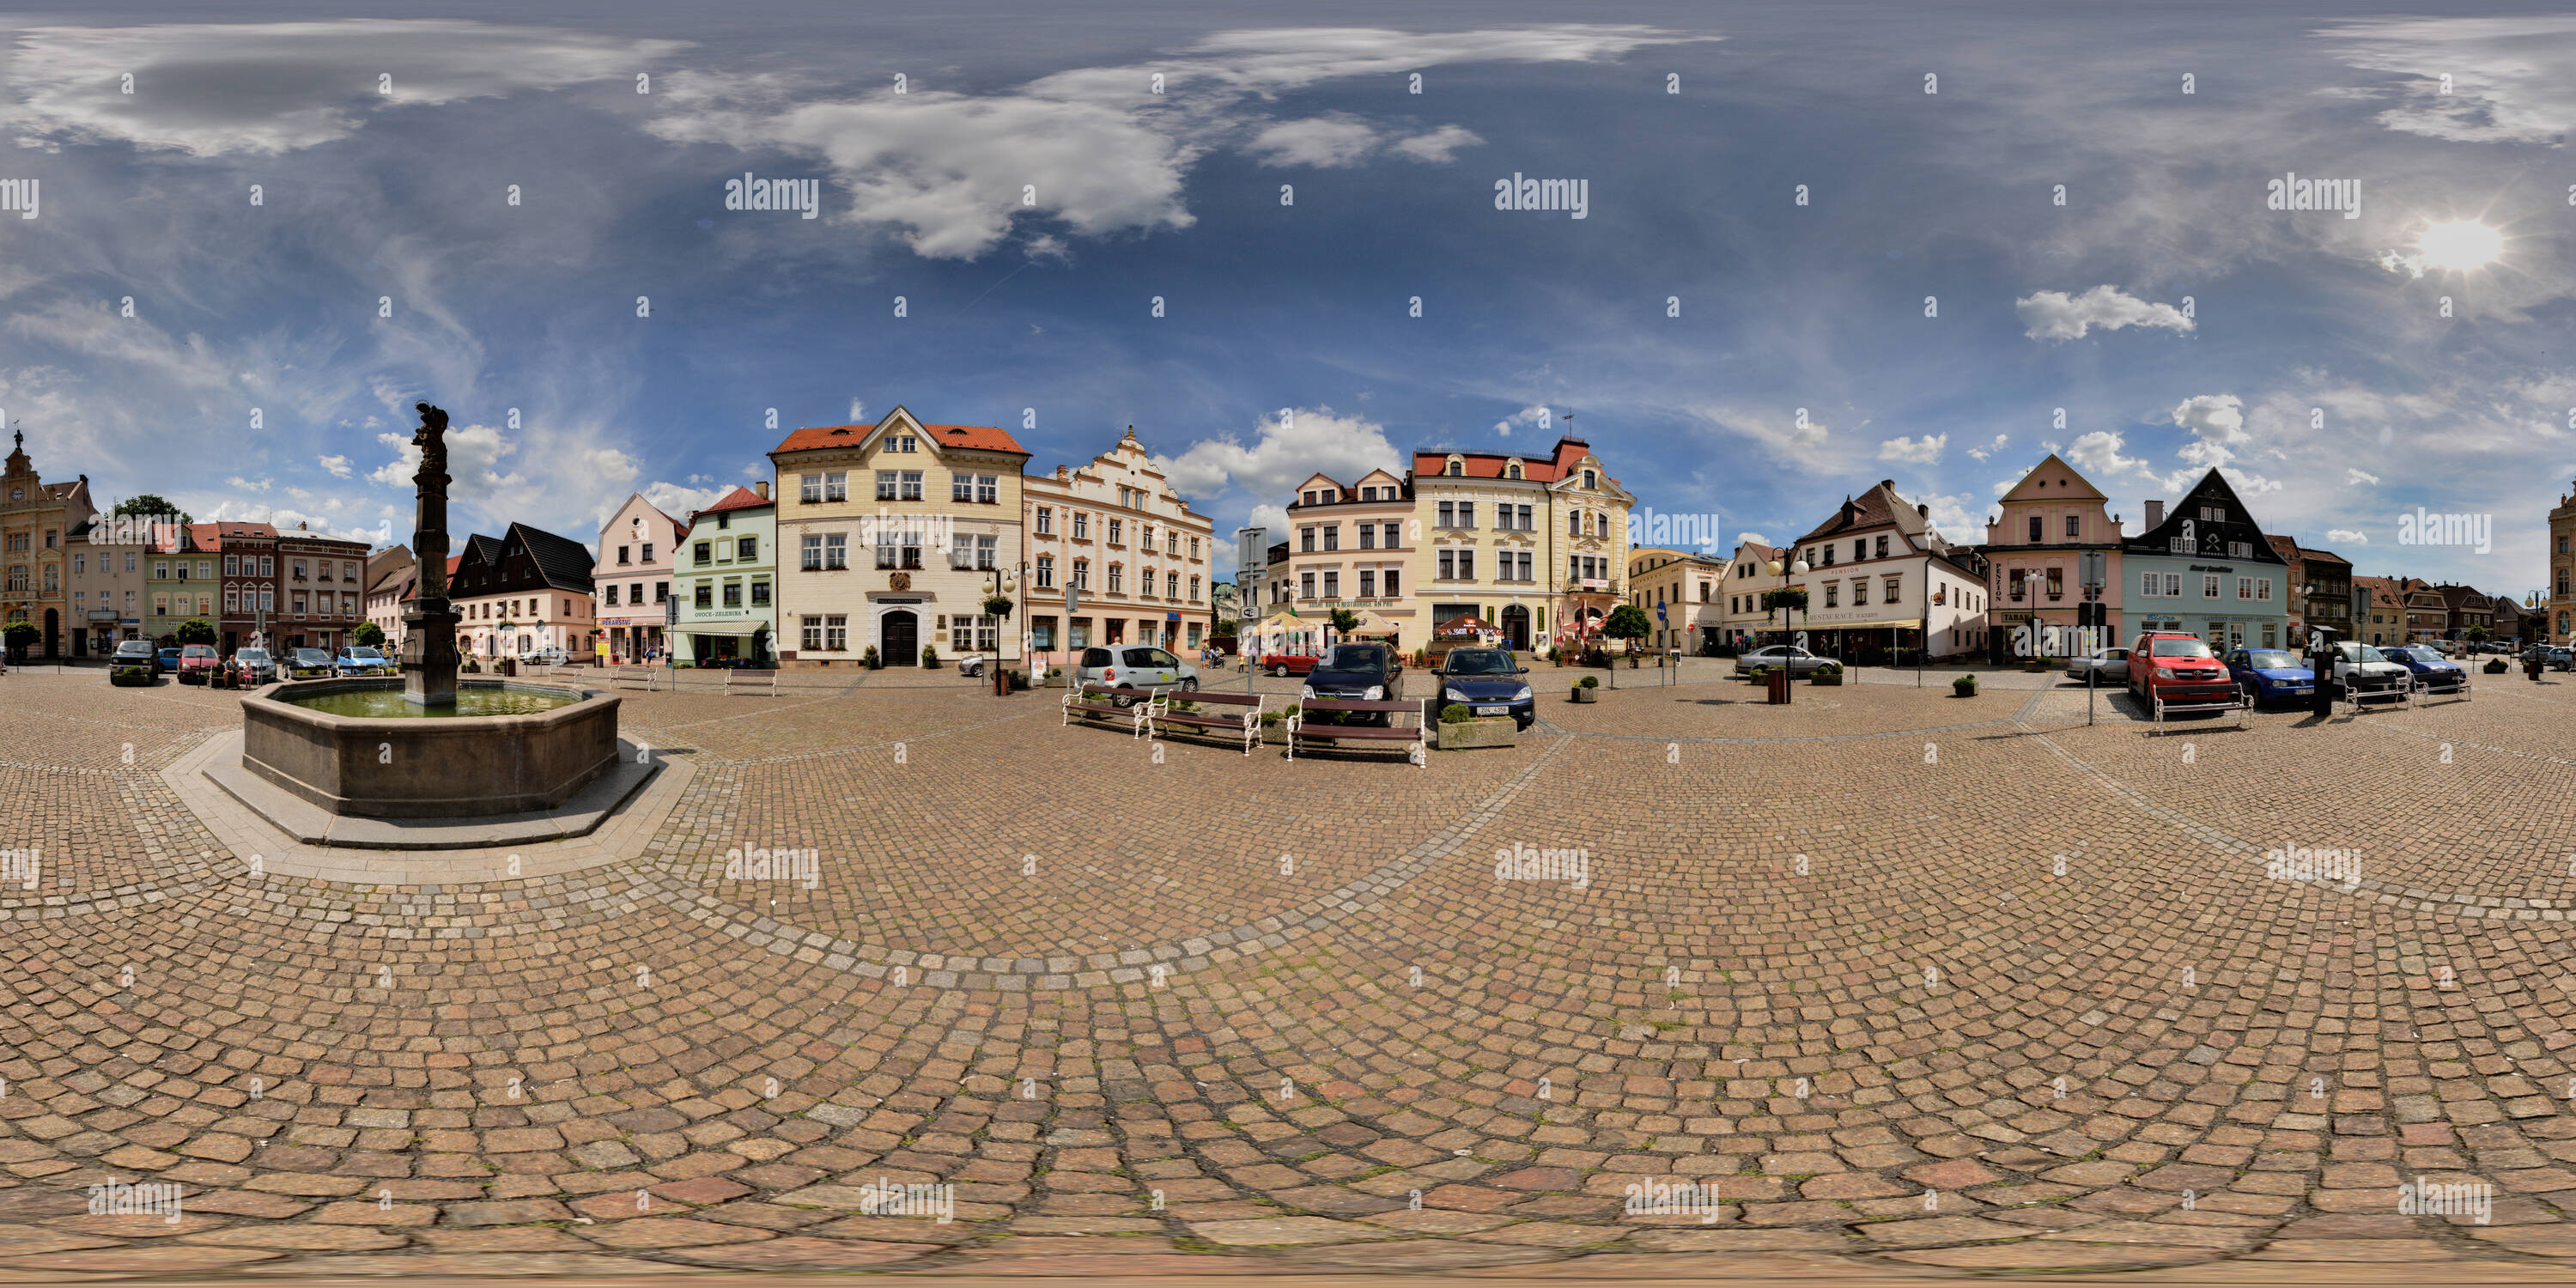 Vue panoramique à 360° de Square en ville Ceska Kamenice, République Tchèque